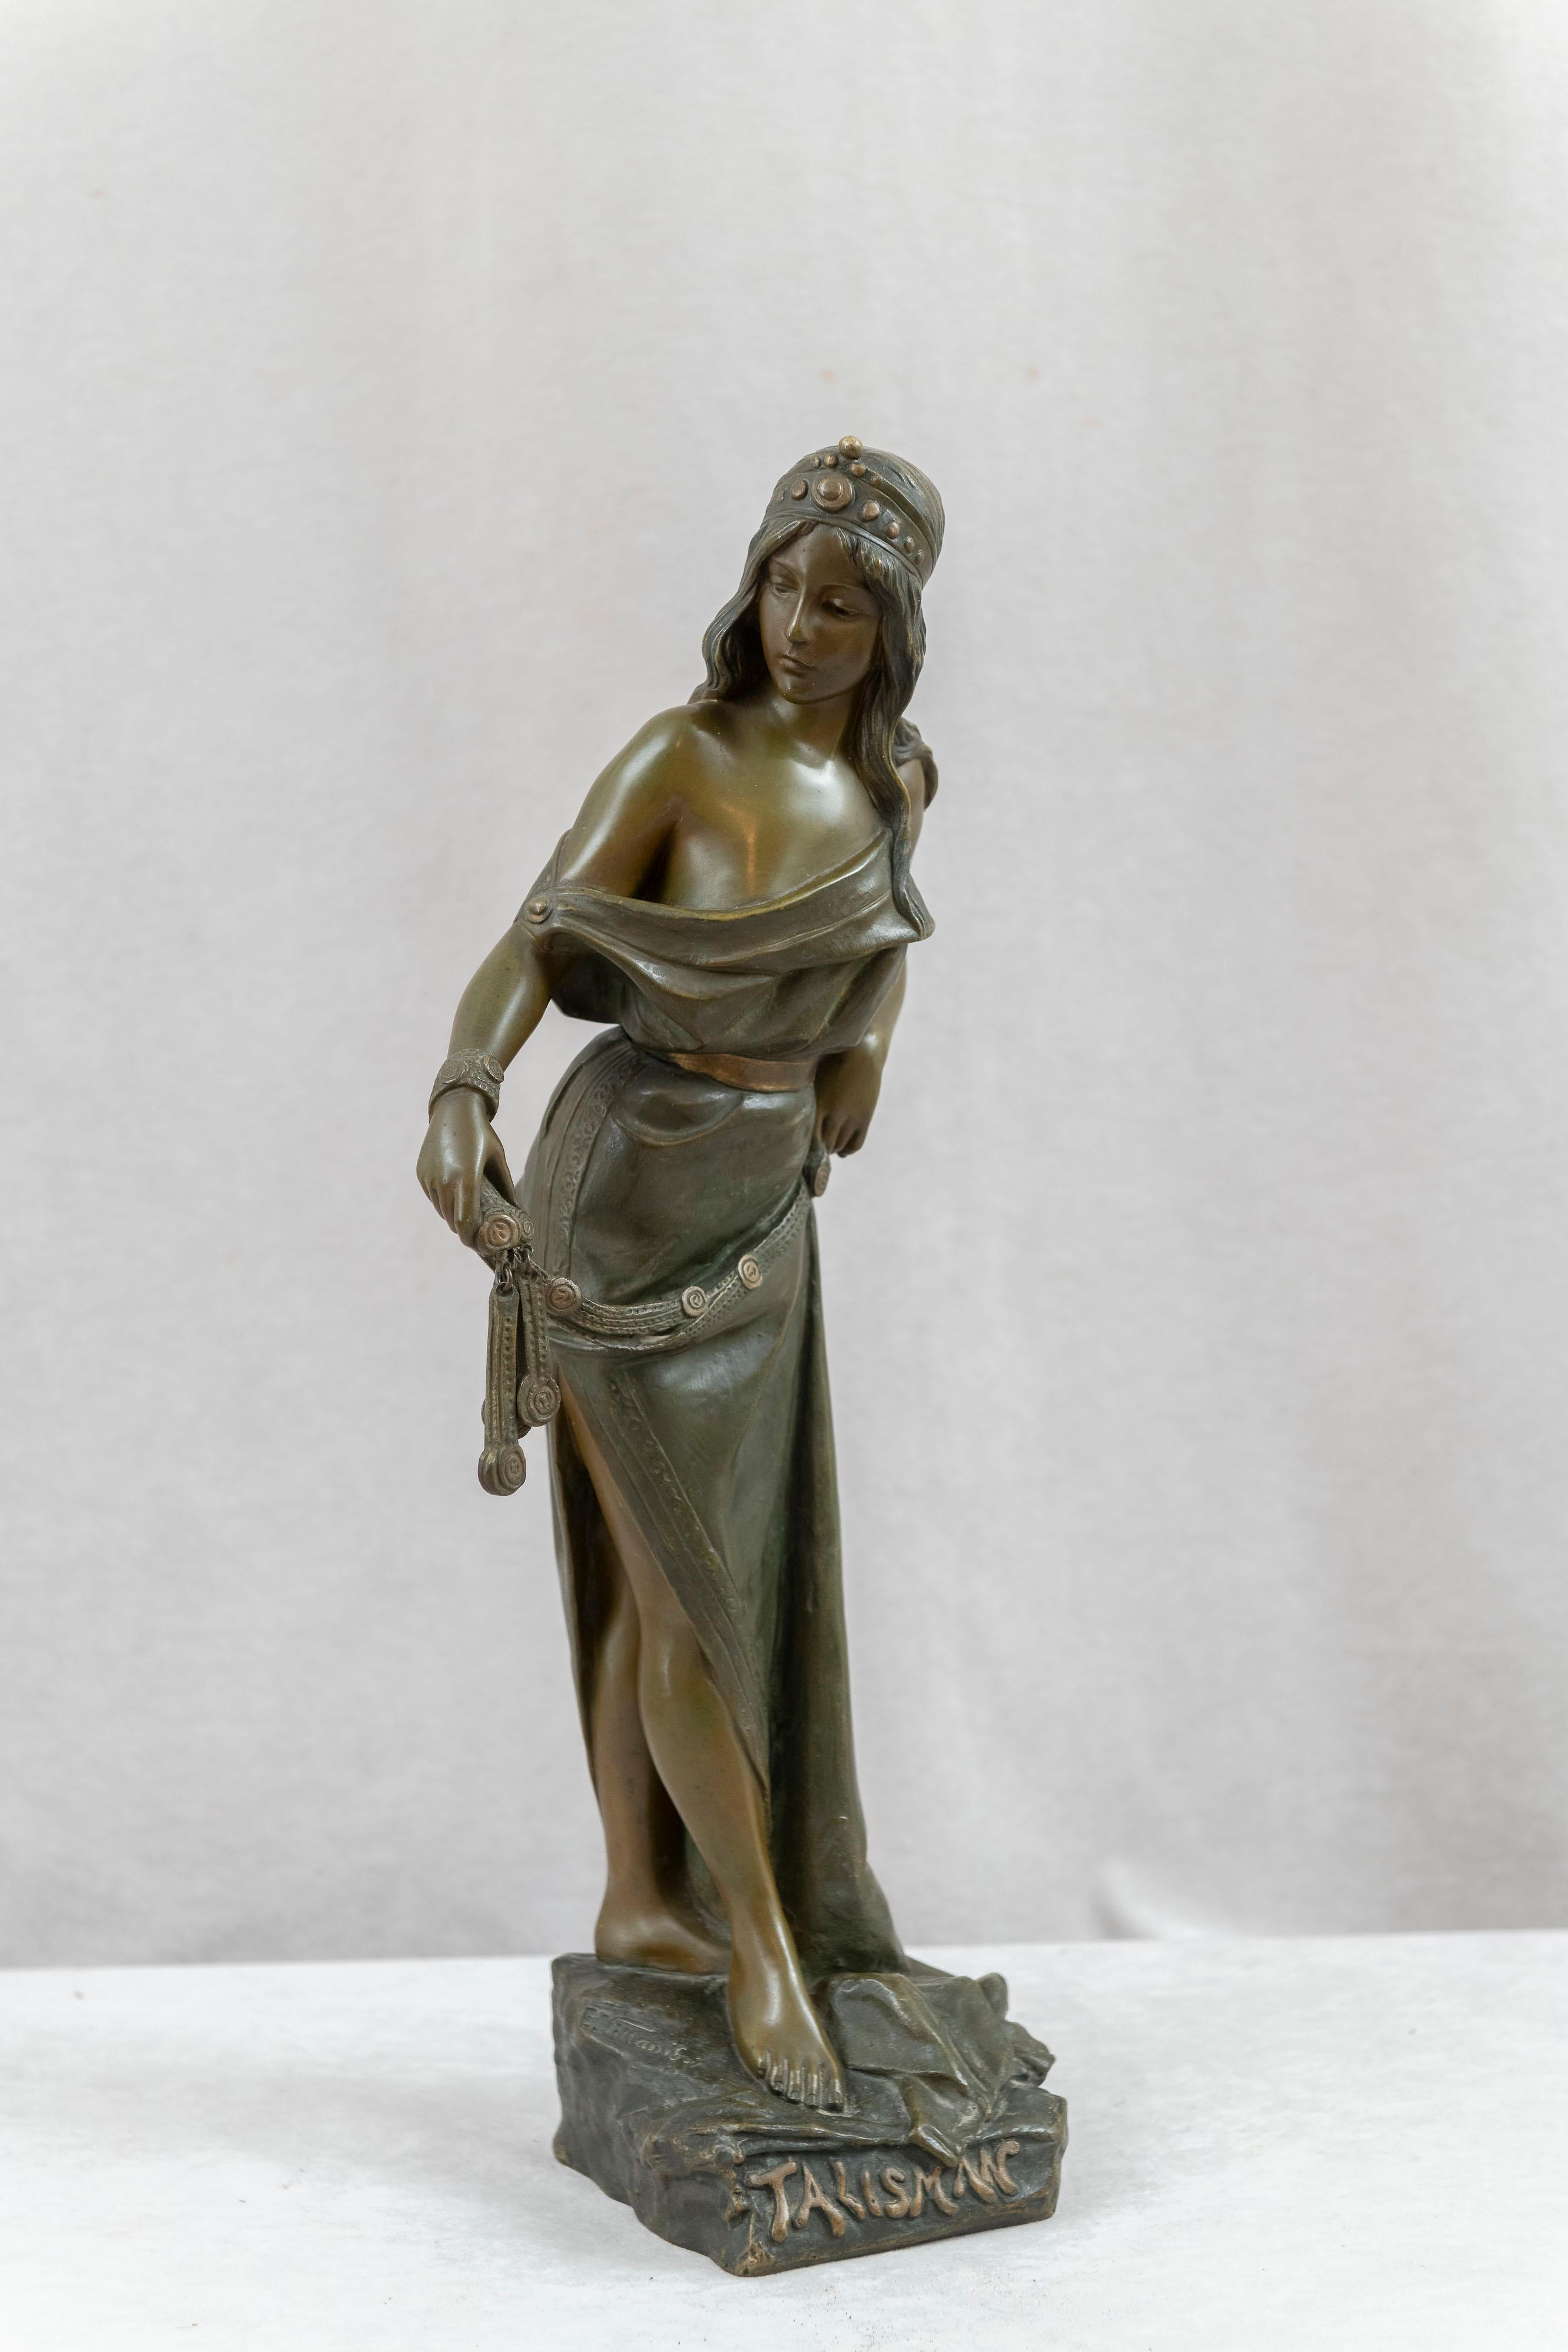  Cette belle jeune femme est un bel exemple des créations du célèbre sculpteur français Emmanuel Villanis (1858-1914). Vous trouverez dans ses œuvres une prédominance de femmes art nouveau, dont une majorité de bustes. Les fonderies qu'il a